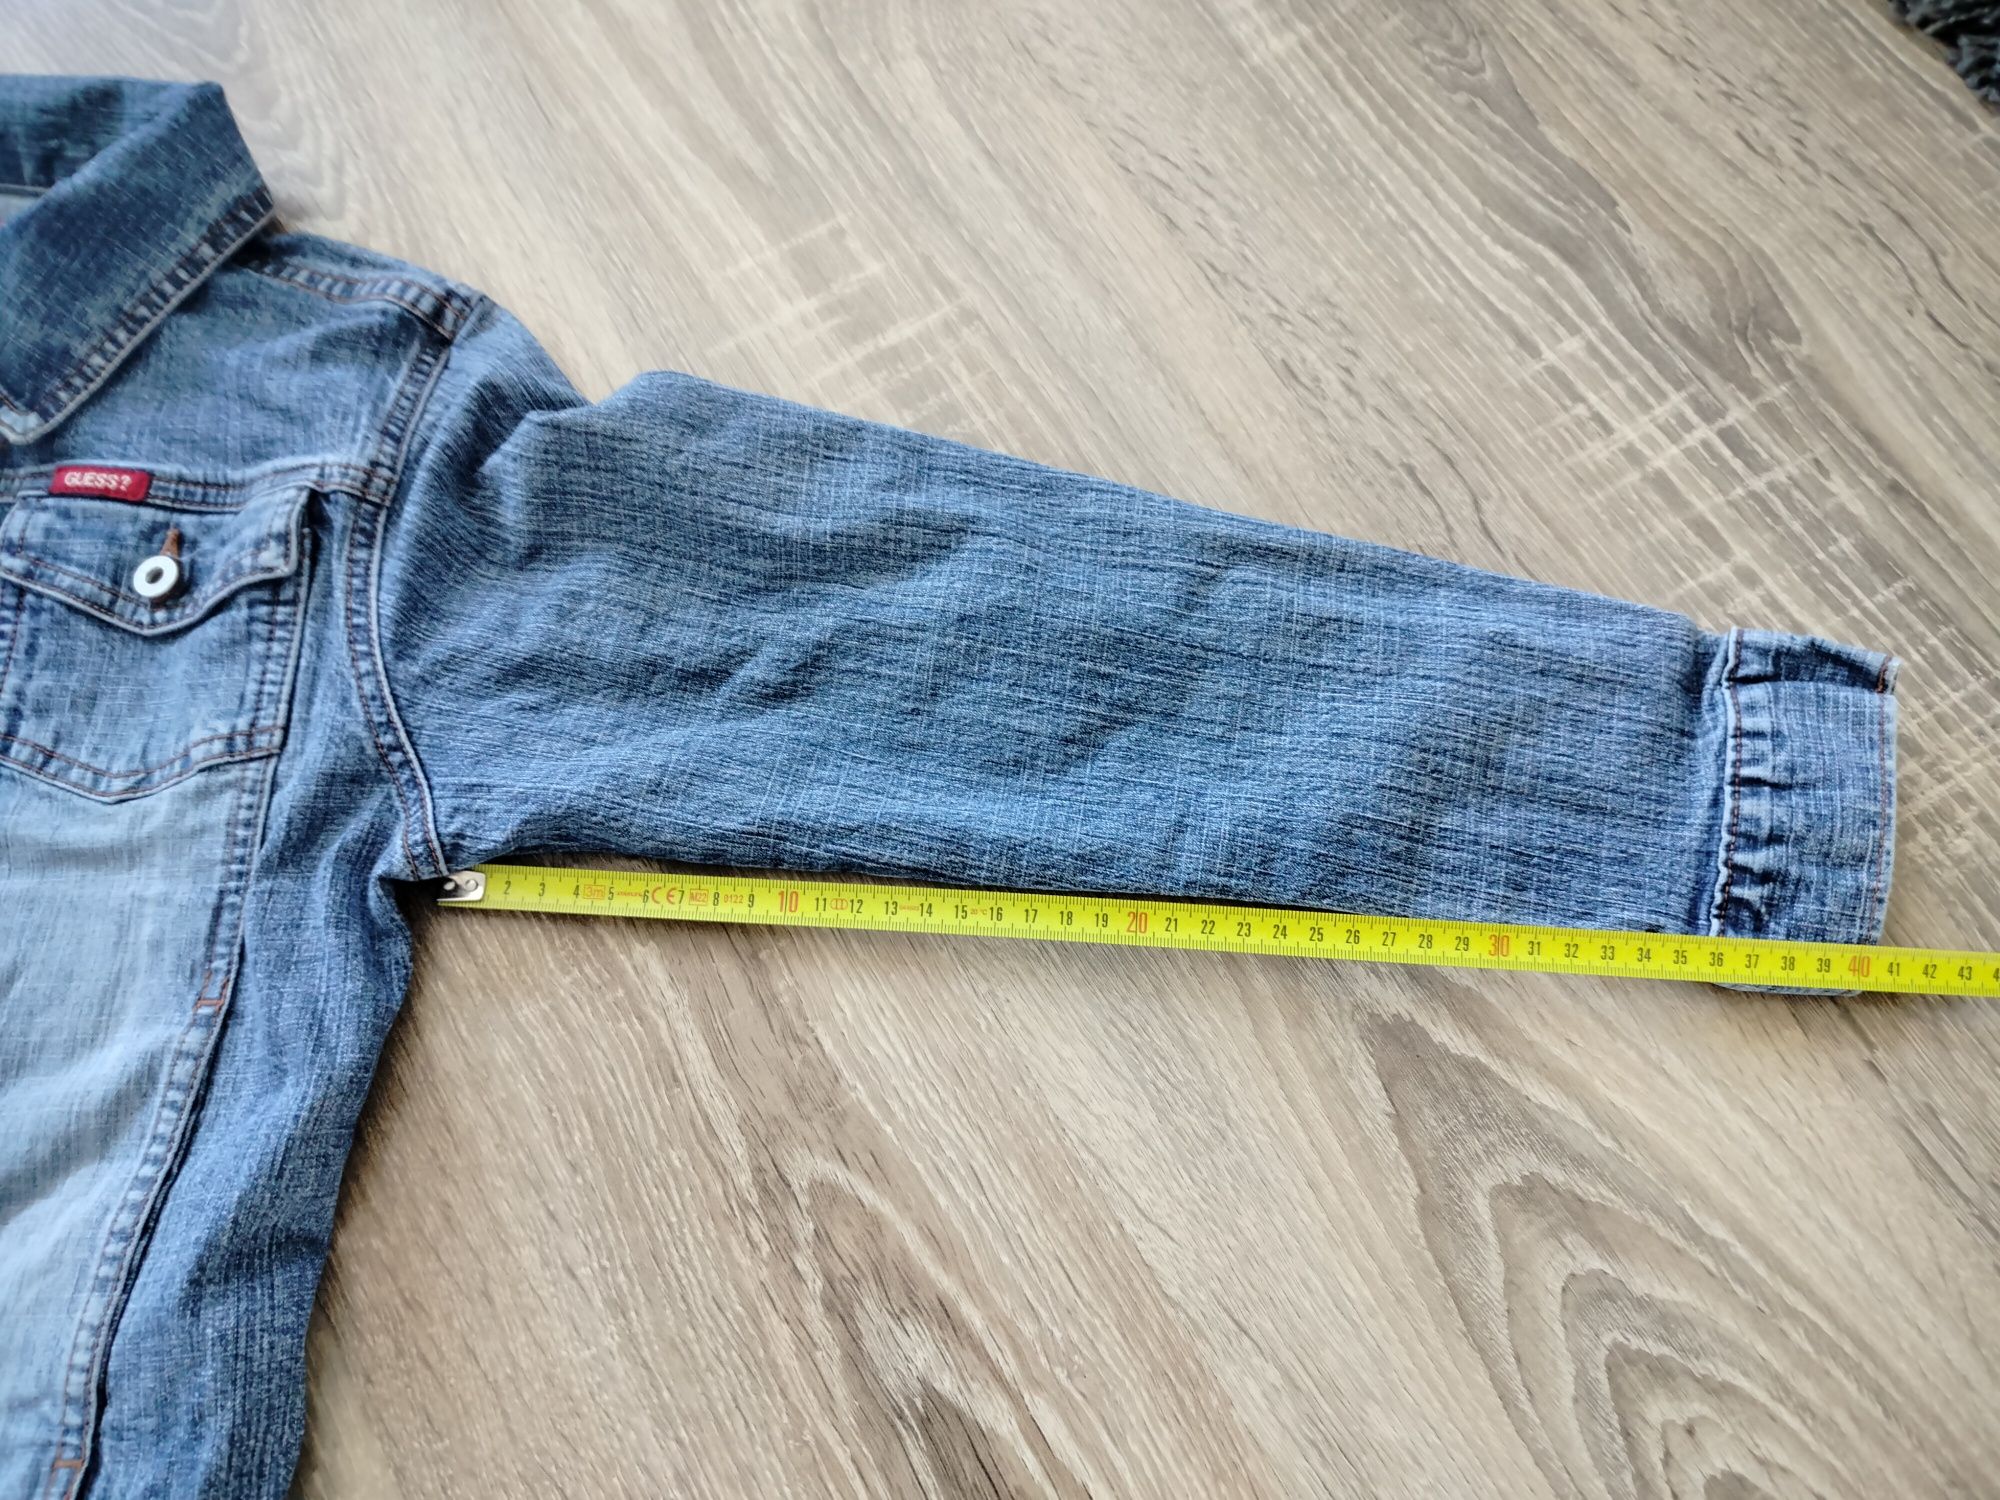 Bluza kurtka jeansowa Guess xs 34